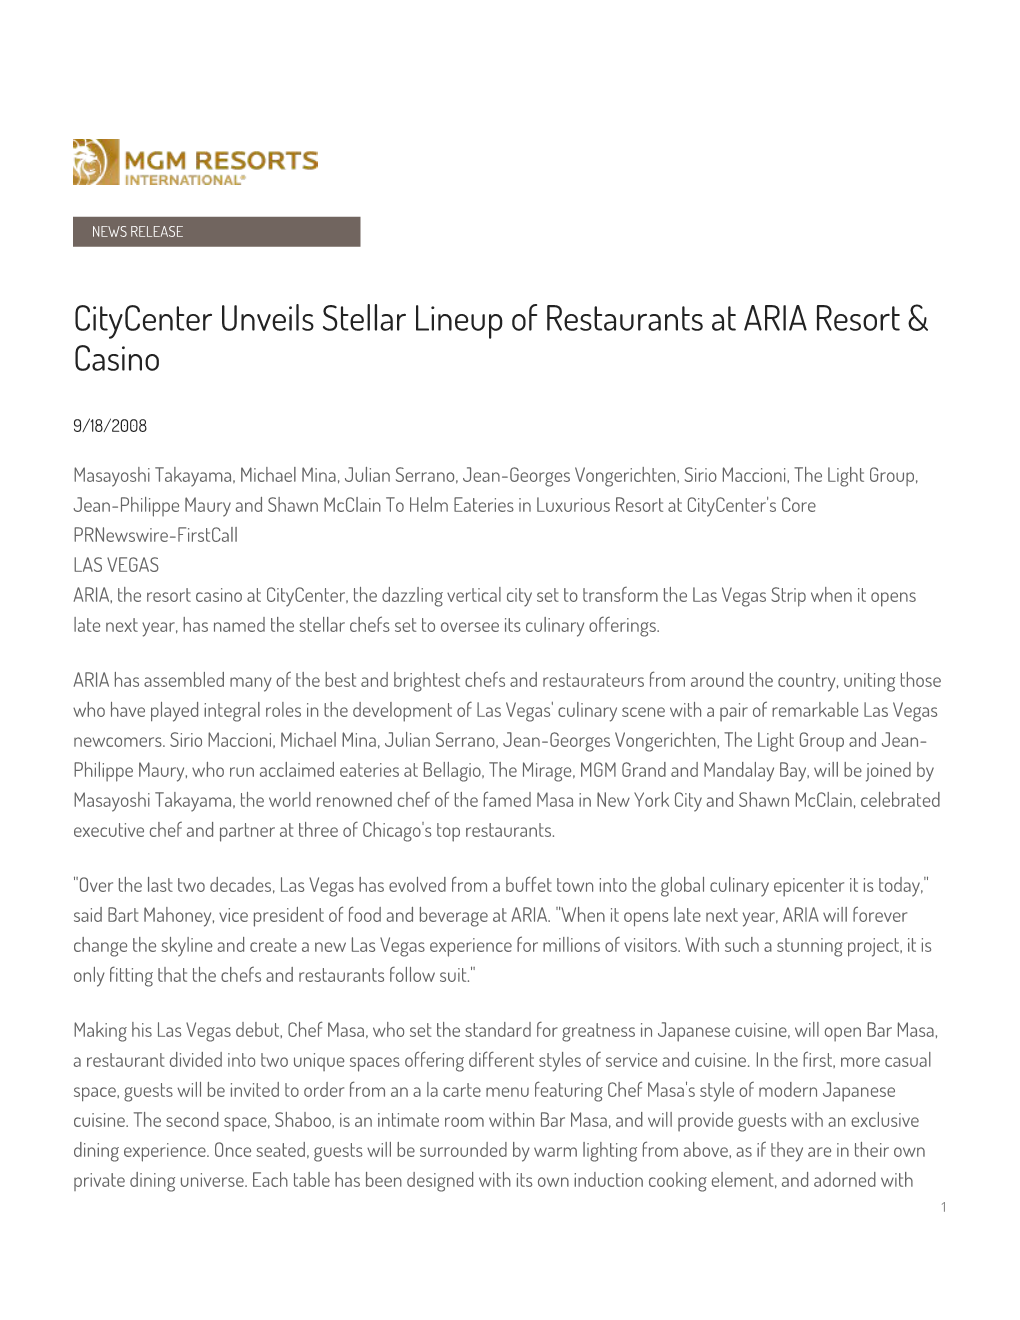 Citycenter Unveils Stellar Lineup of Restaurants at ARIA Resort & Casino